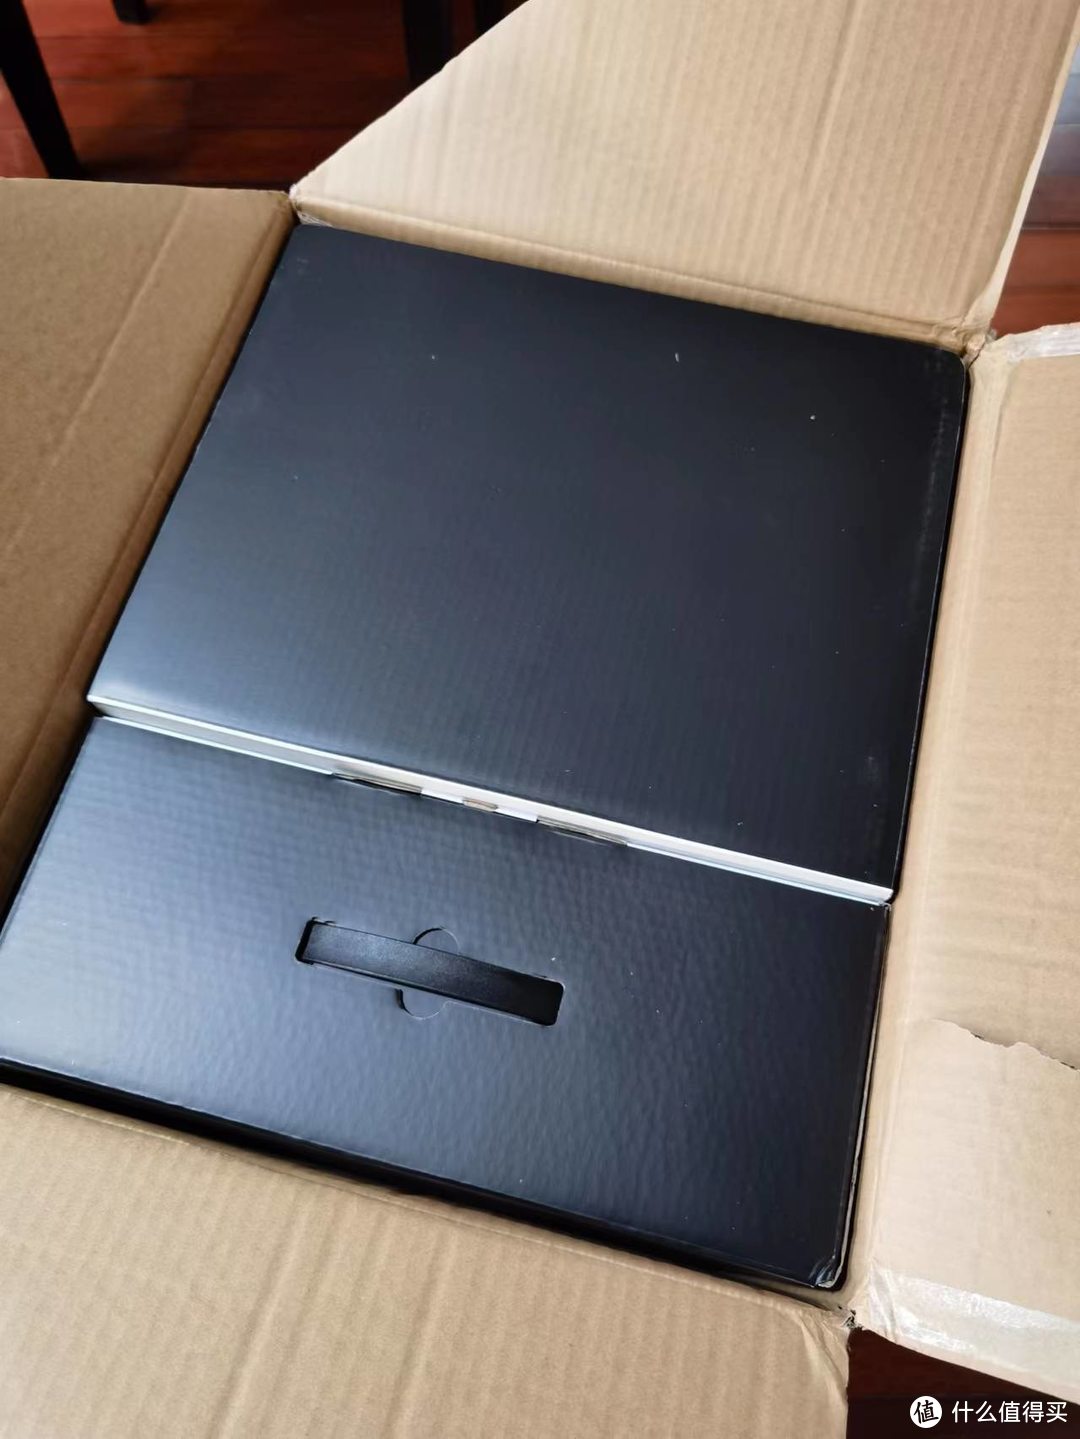 黑色的盒子挺有质感的。过度包装啊。